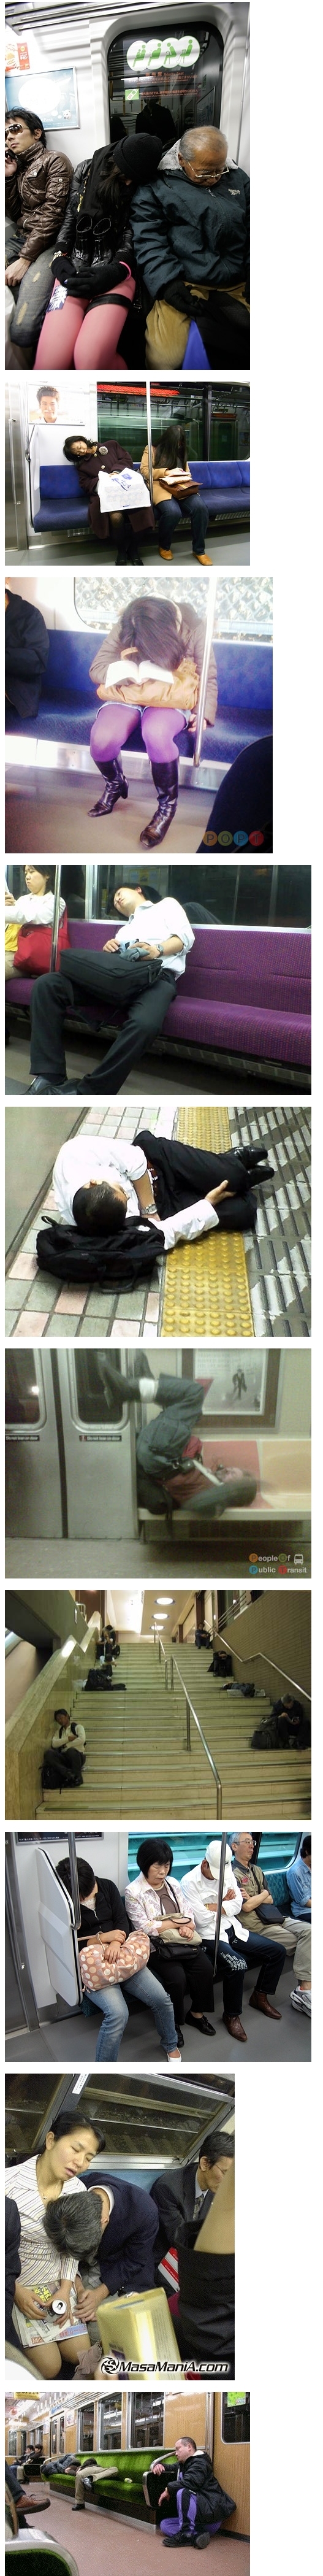 지하철에서의 졸음은 죽음이다